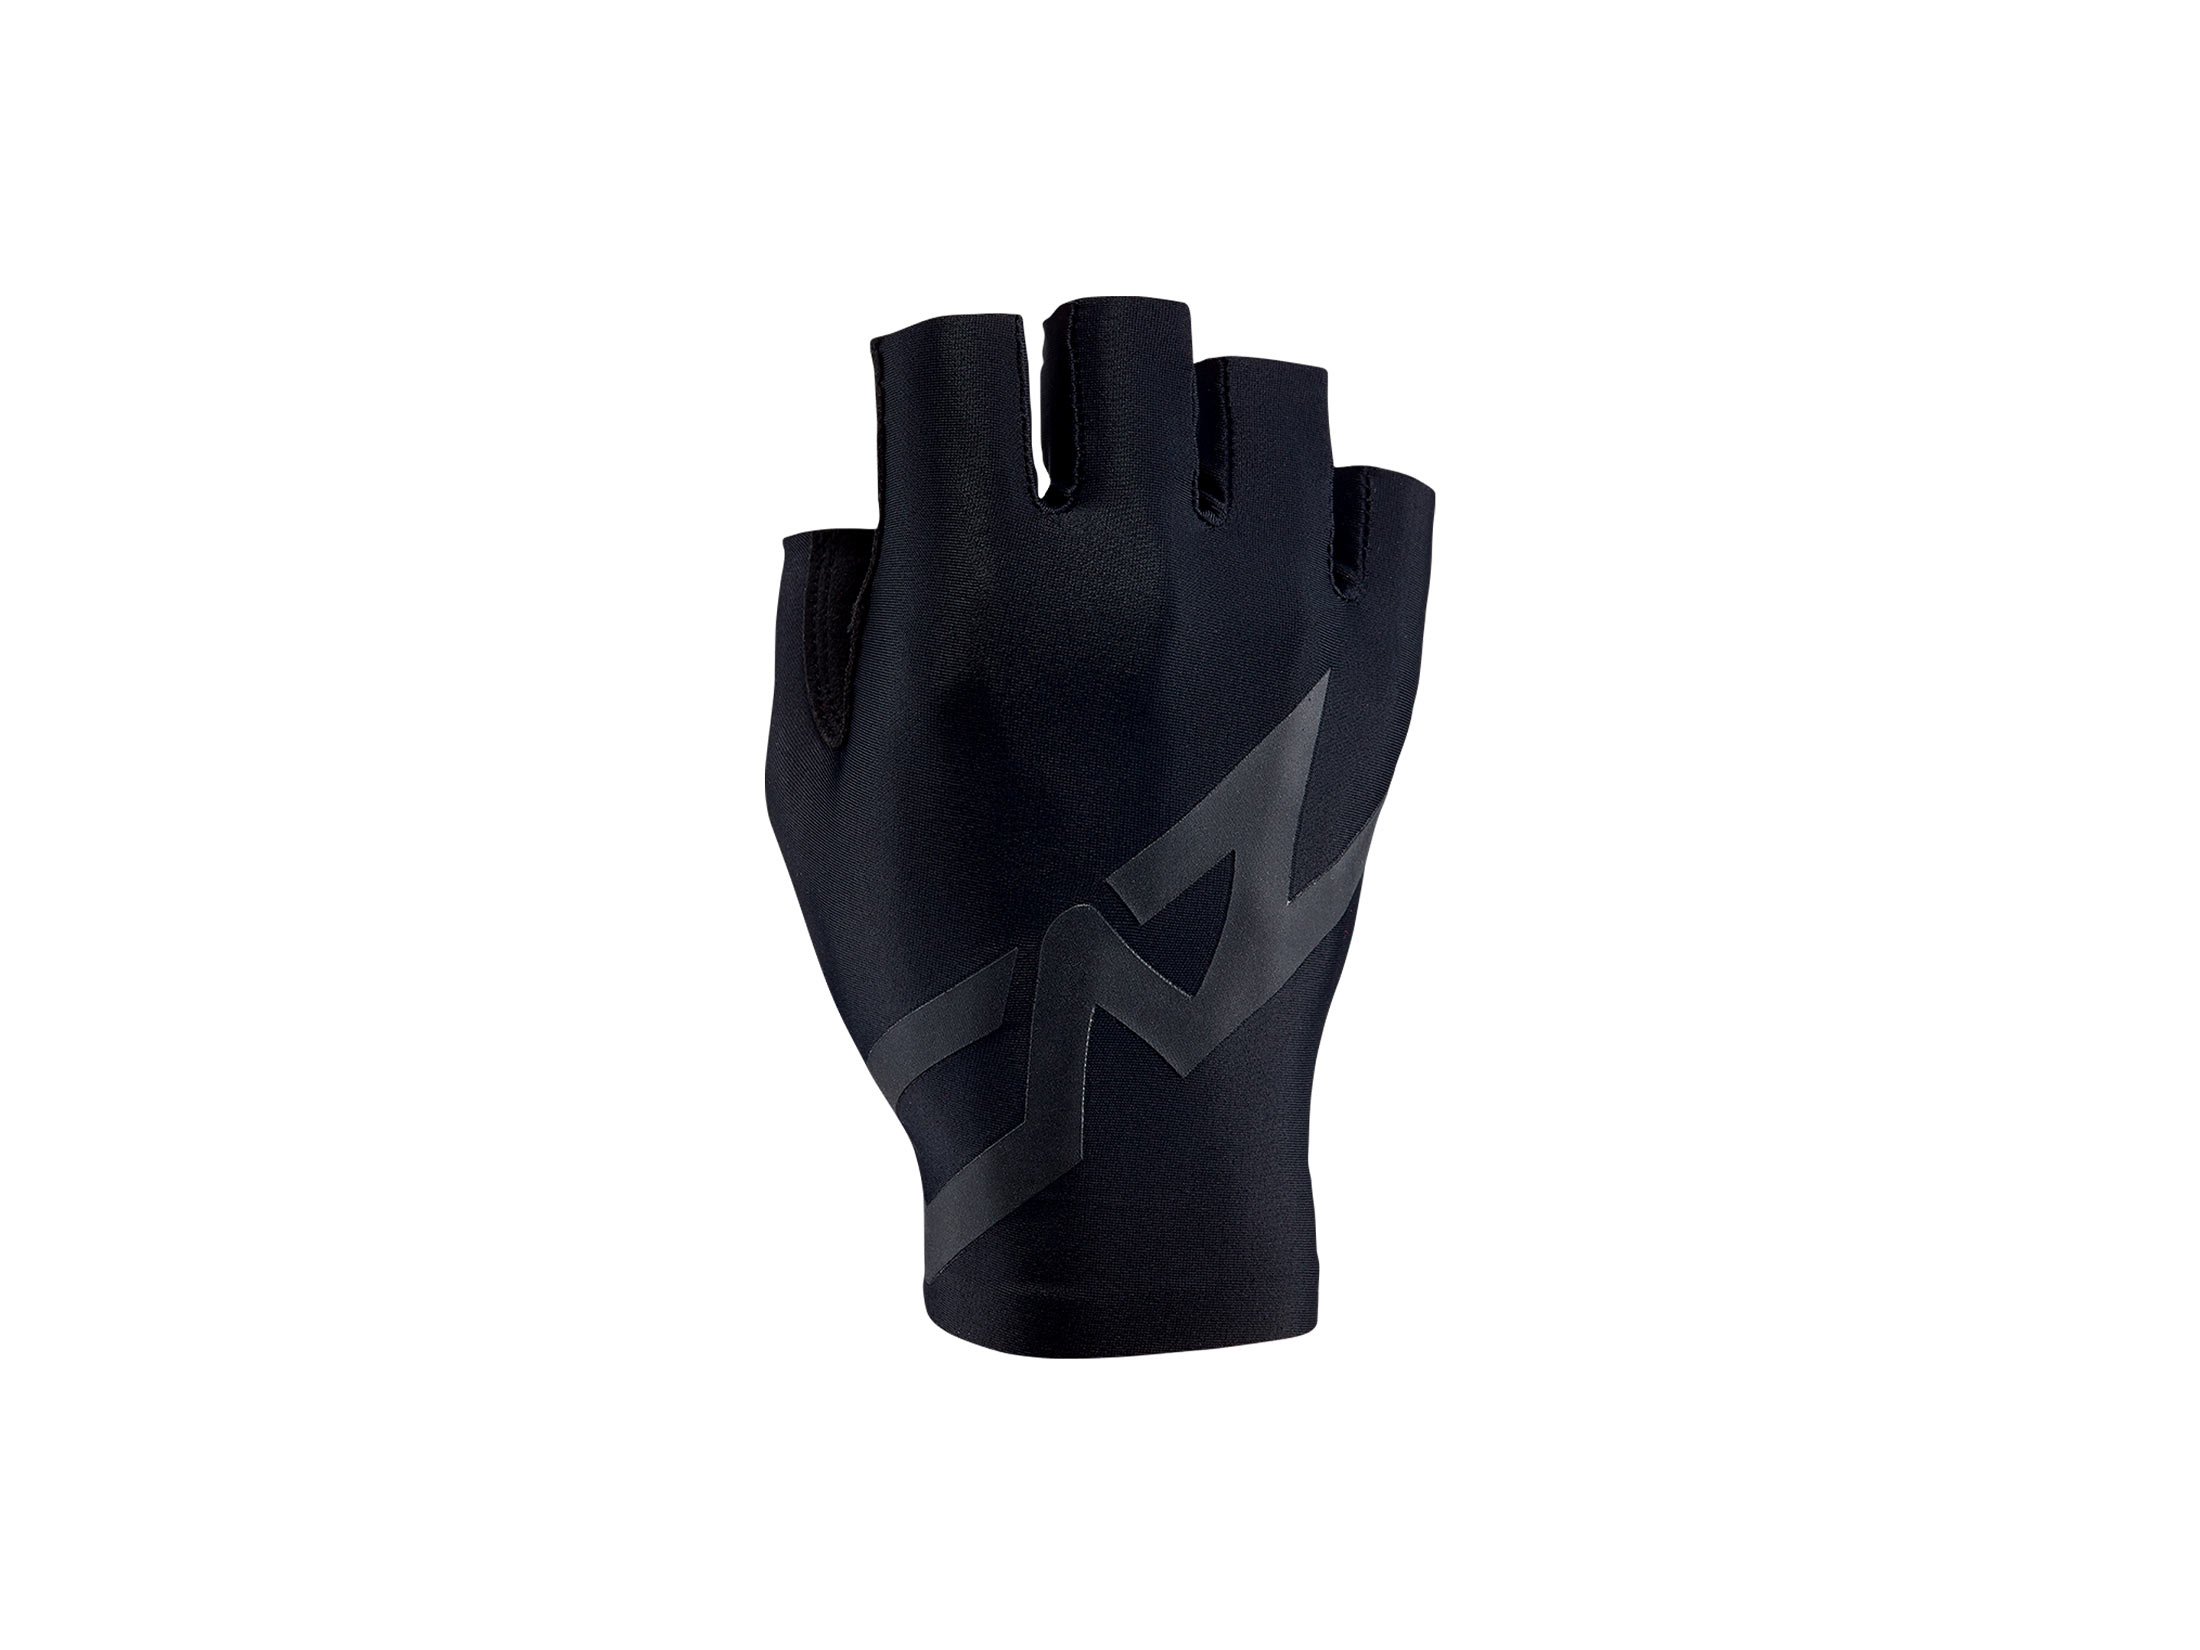 Supacaz SupaG Short Gloves - Twisted Black